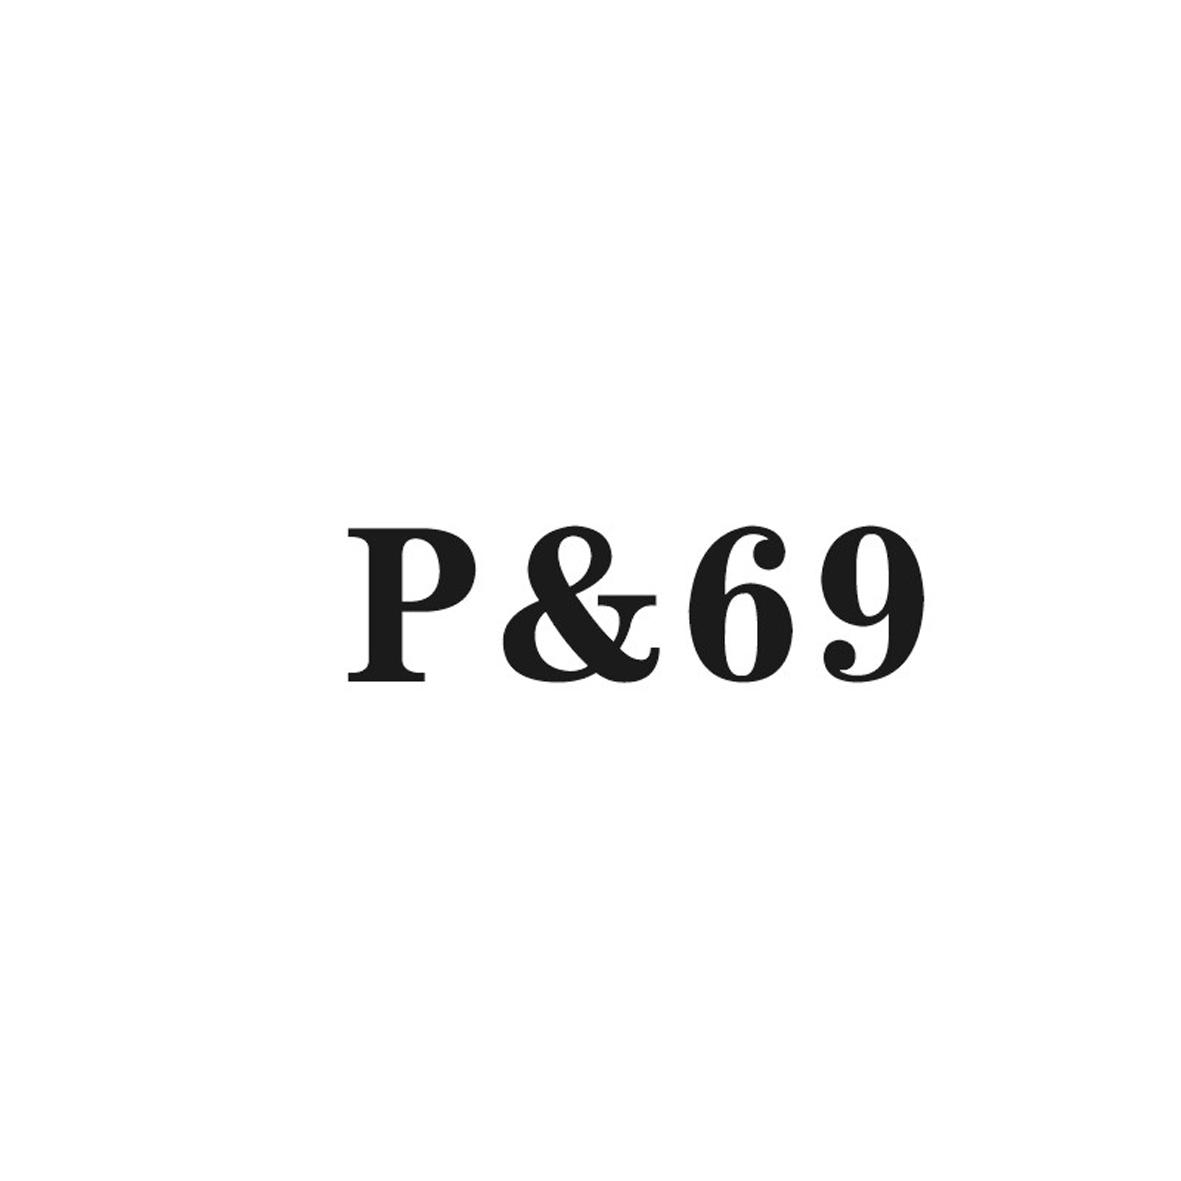 18类-箱包皮具P&69商标转让